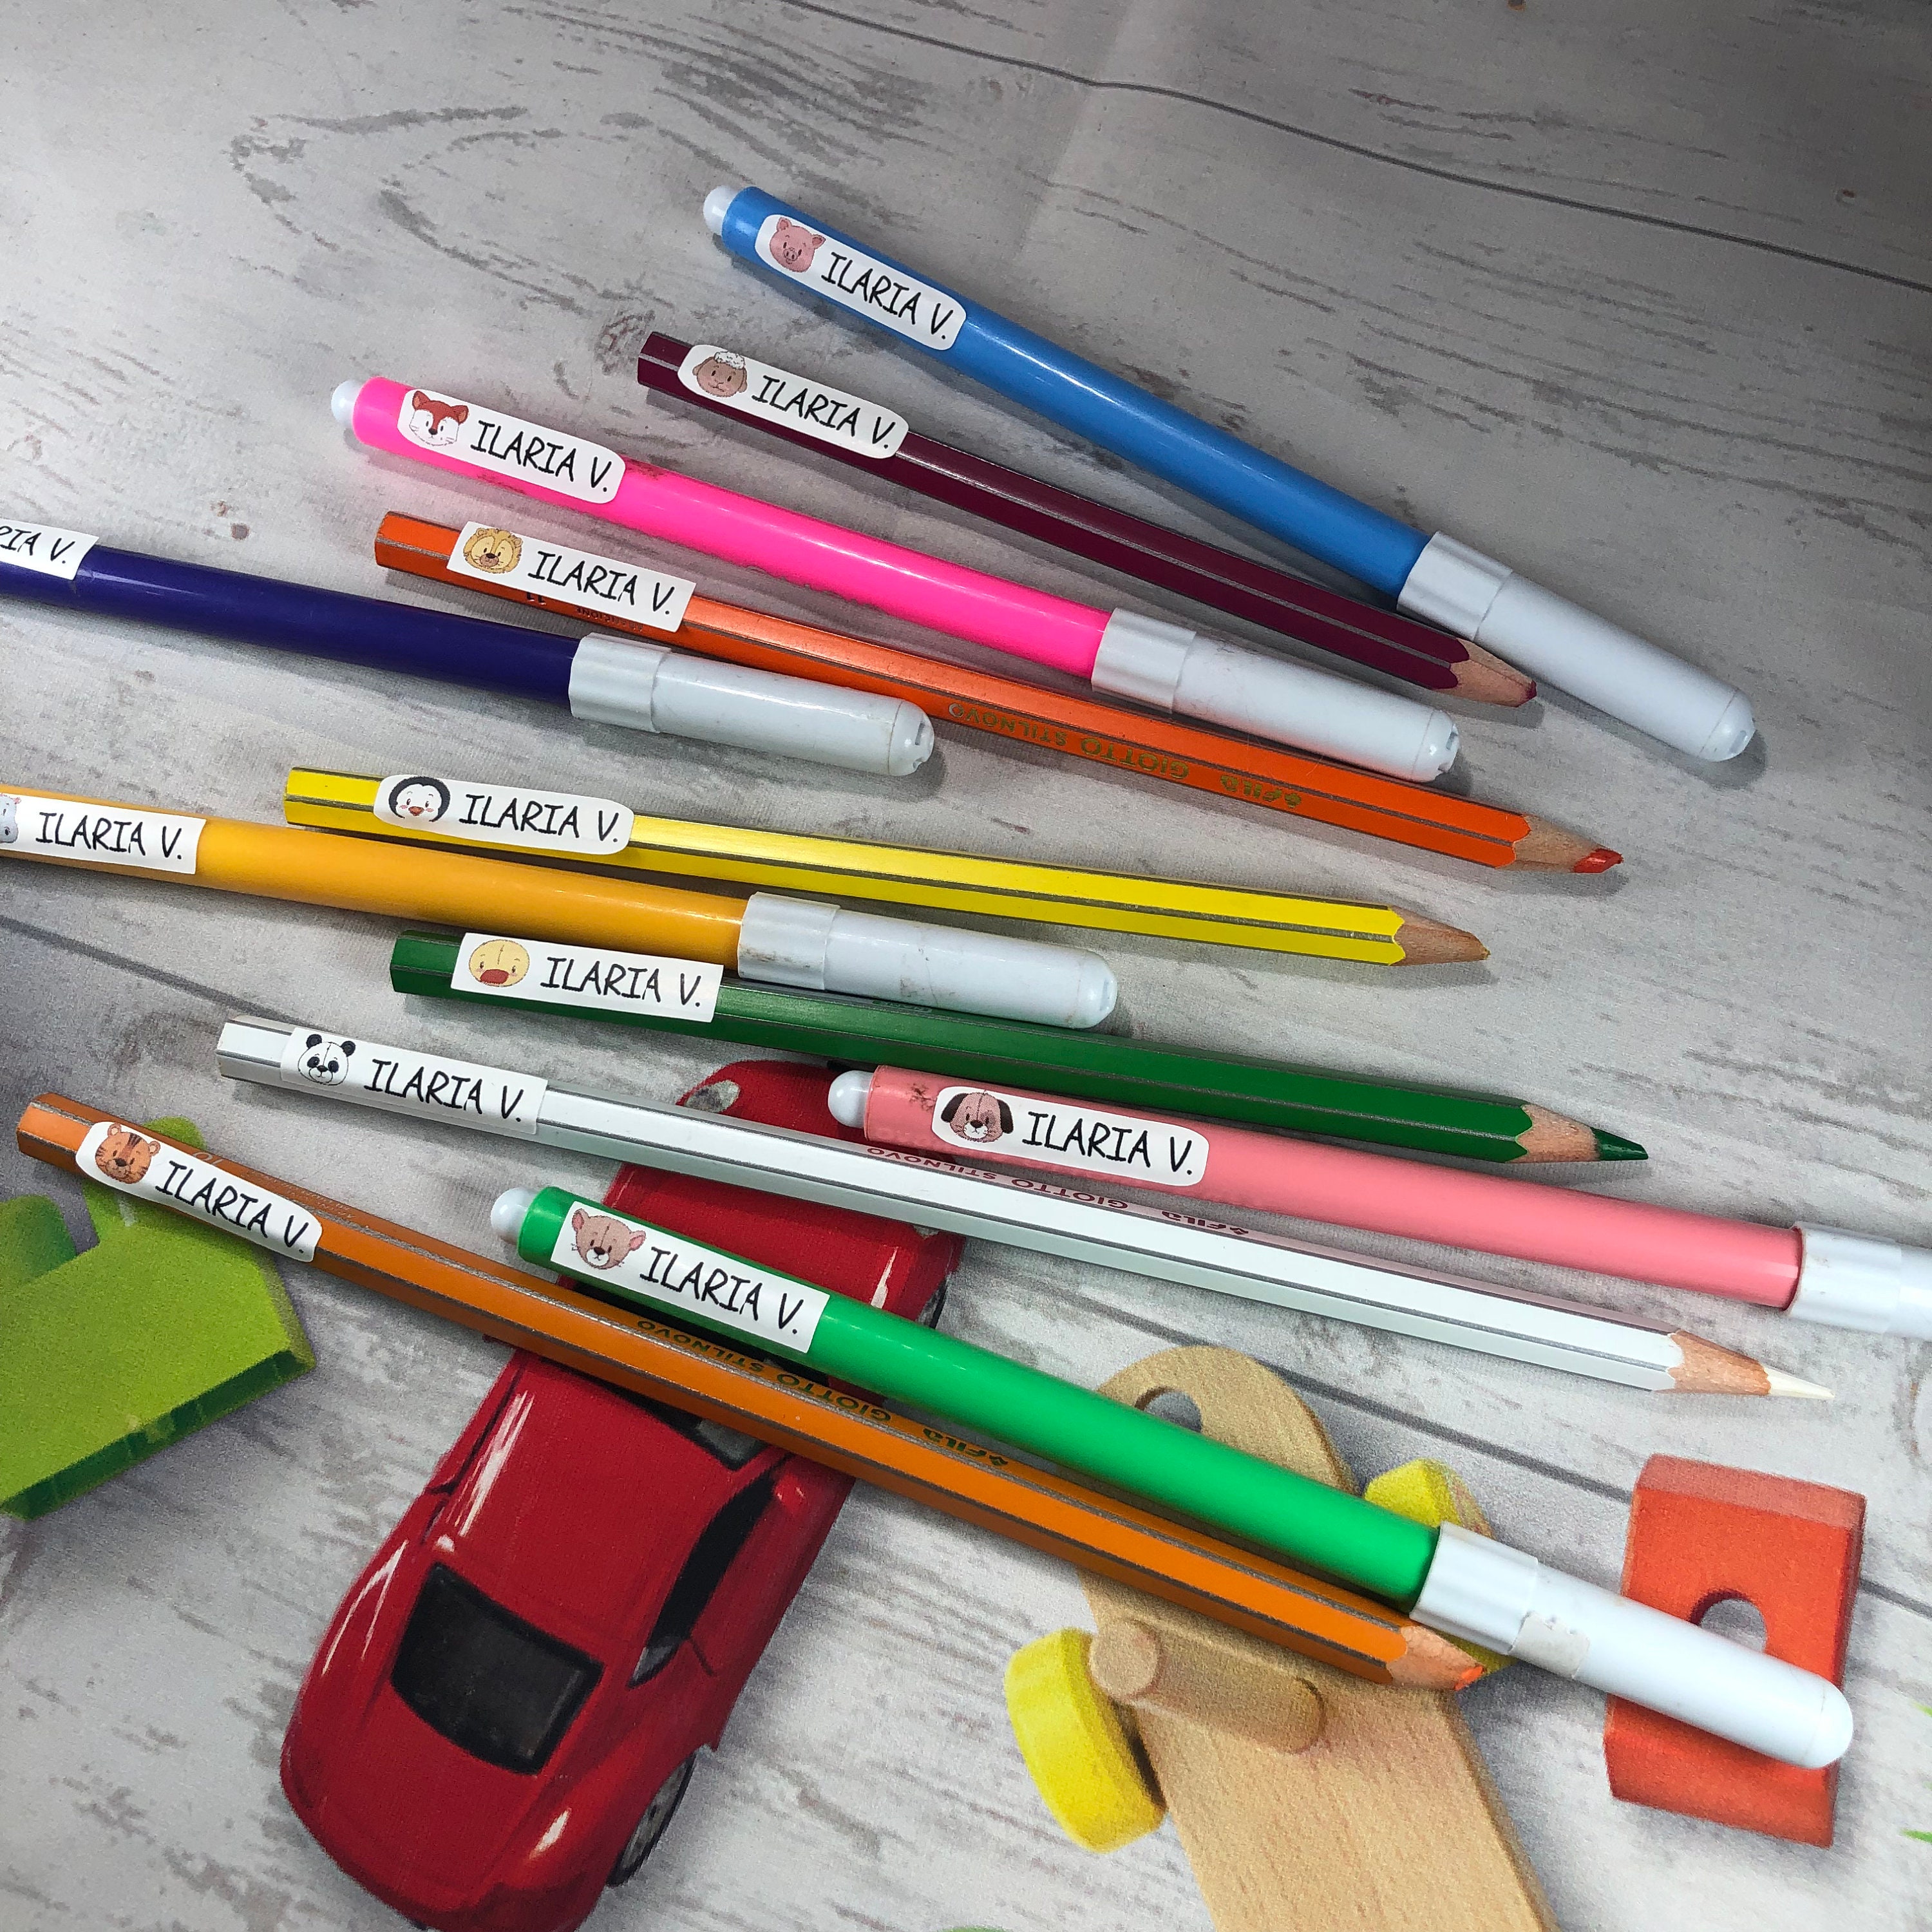 120 etichette adesive scolastiche per matite penne pennarelli  personalizzate con nome 12 disegnini diversi in pvc superadesivo scuola  asilo -  Italia